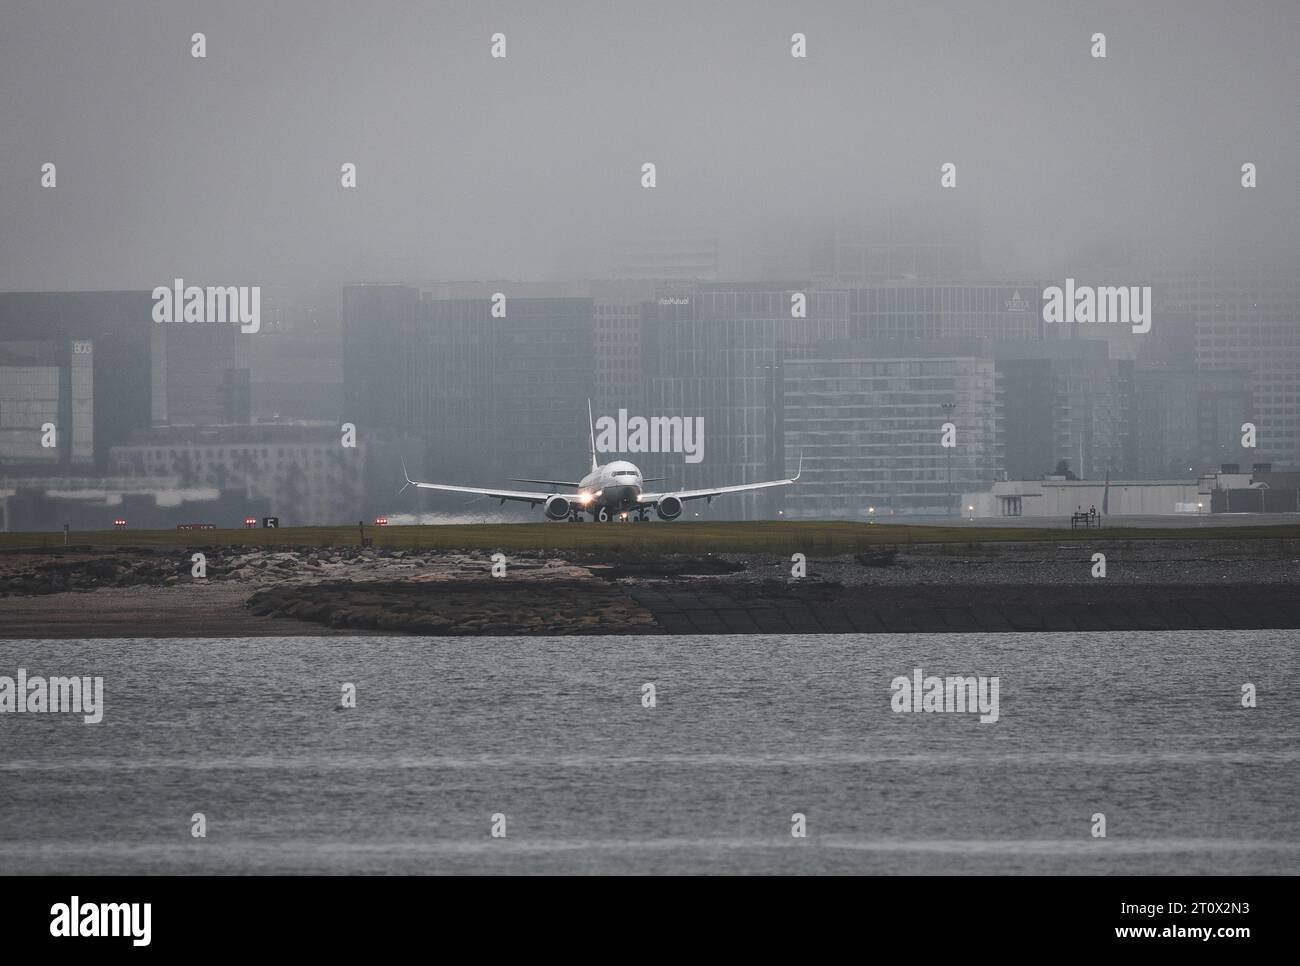 avion despegando con el skyline de boston